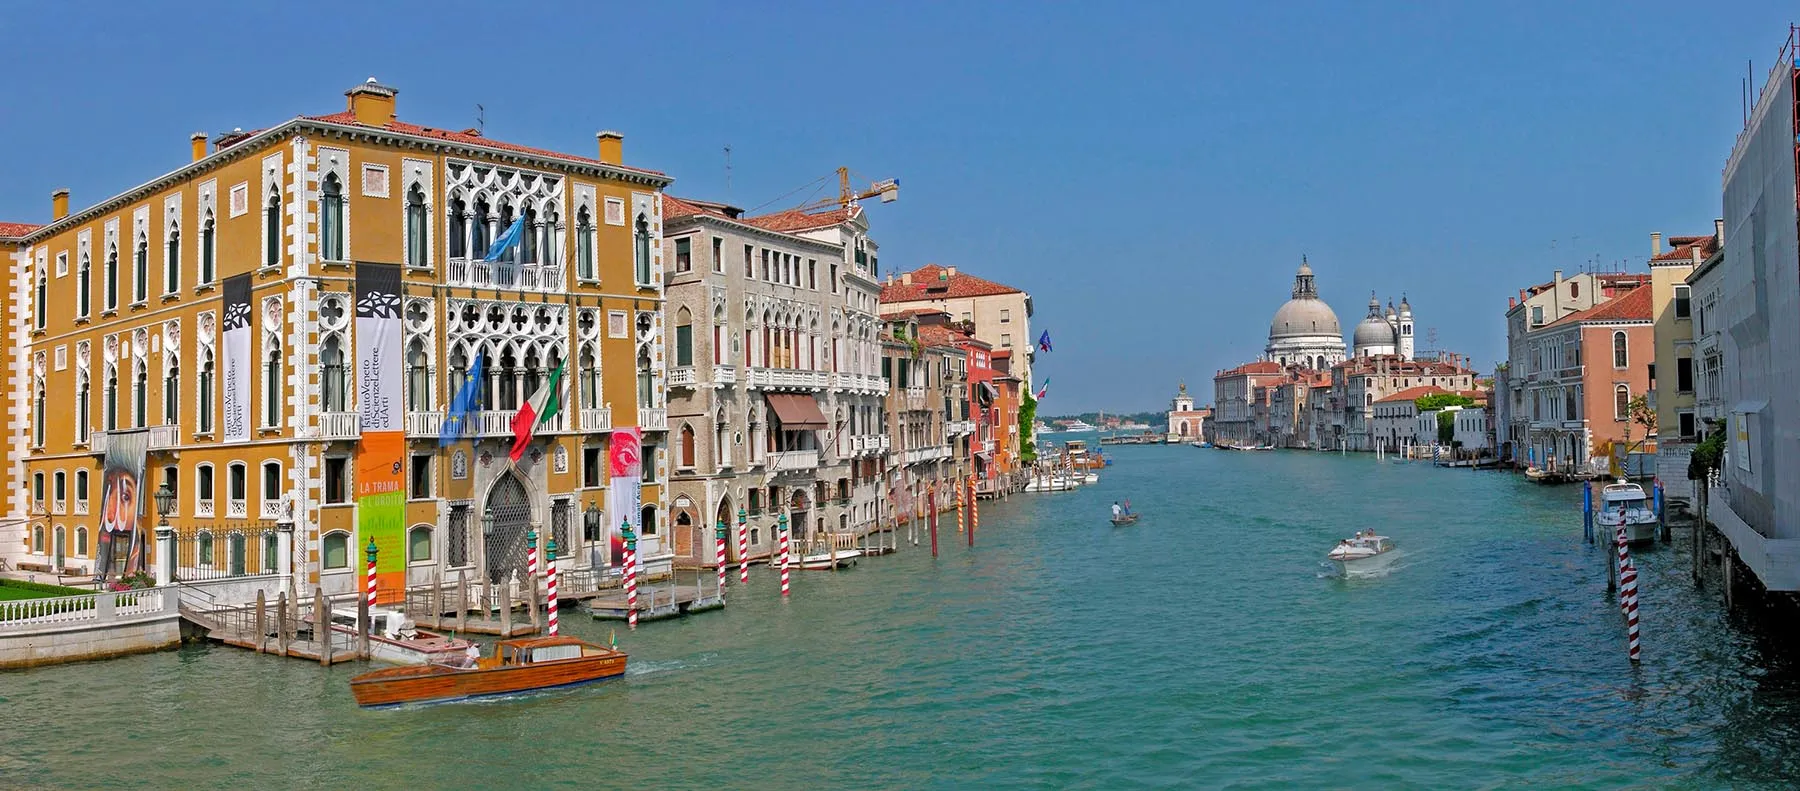 Quel <em>Photo Boat</em> a Venezia e gli stereotipi fermi nelle menti dei giornalisti